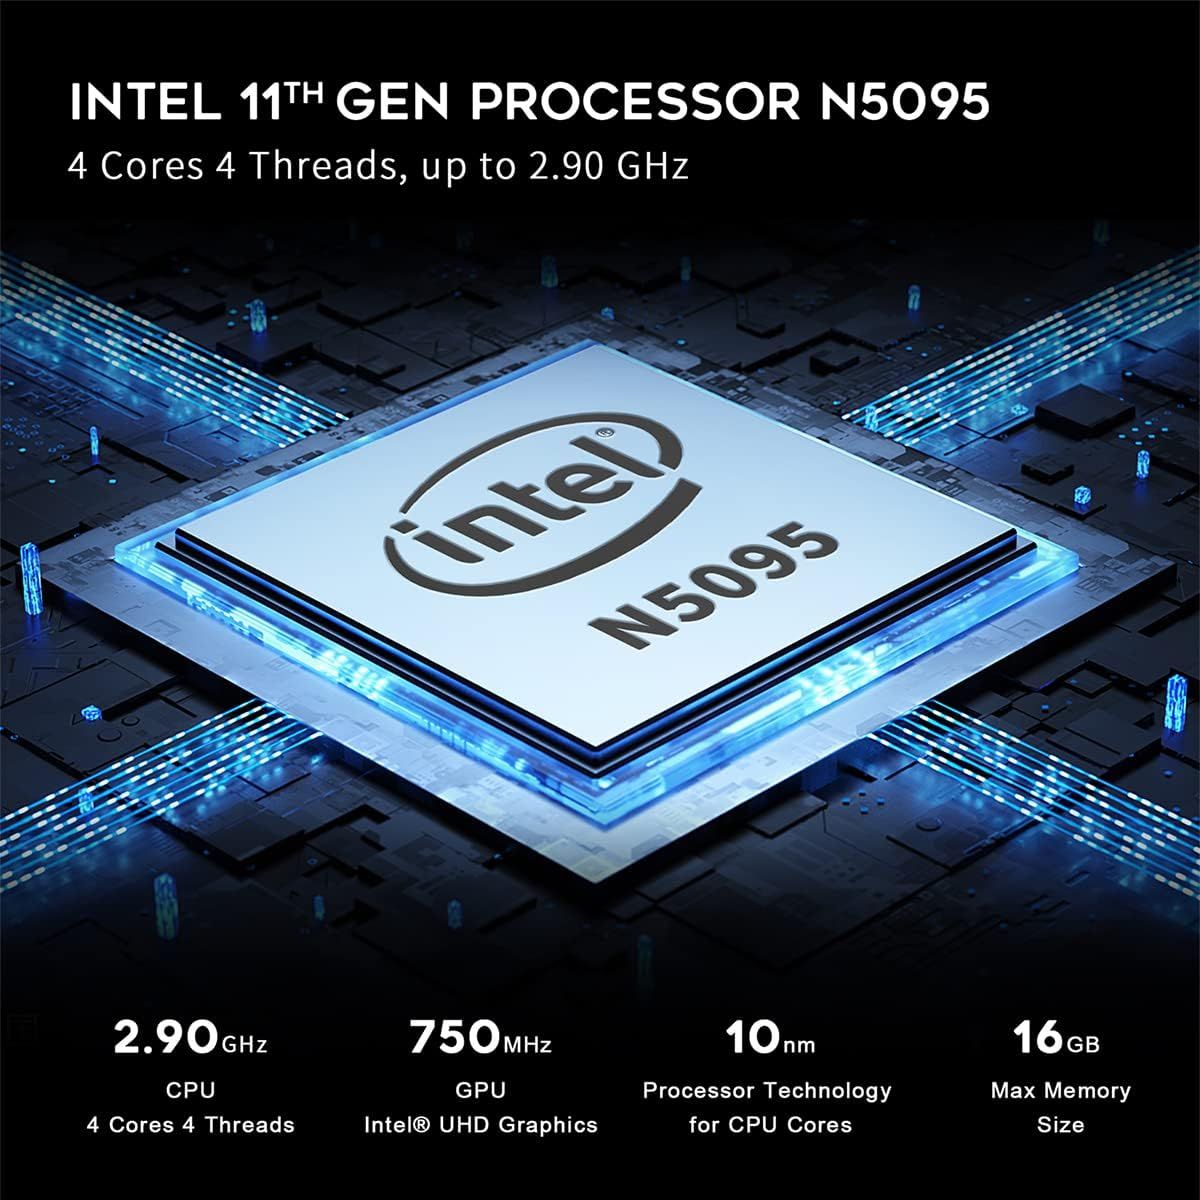 Beelink U59 Pro Mini PC Intel 11th Gen Celeron N5105 DDR4 8GB 16GB SSD  512GB Wifi BT Dual 1000M LAN Mini Computer